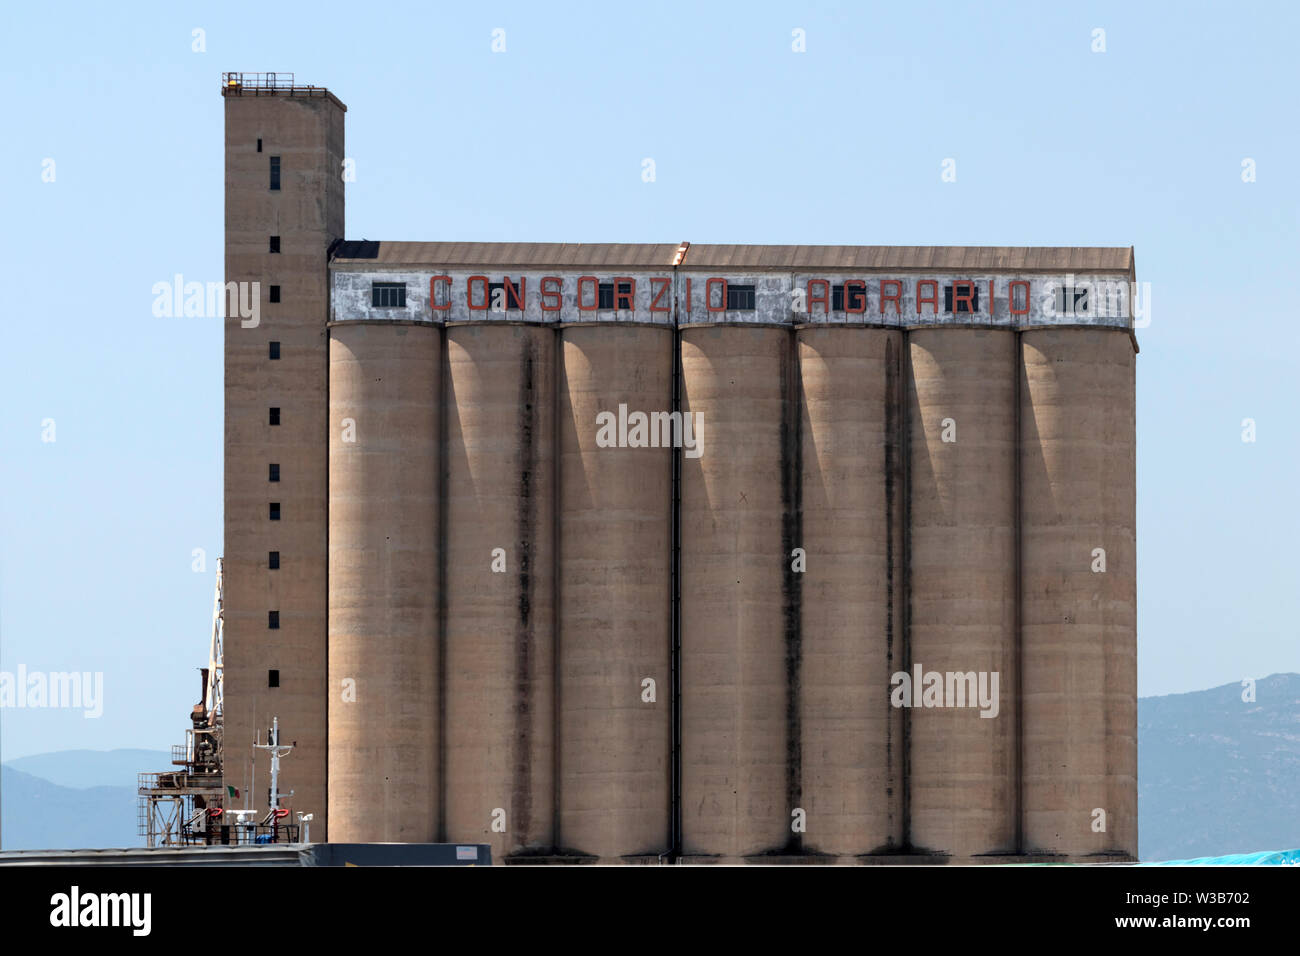 CAGLIARI, ITALY - June 16, 2019: Large concrete grain silos in Cagliari freight port. Stock Photo